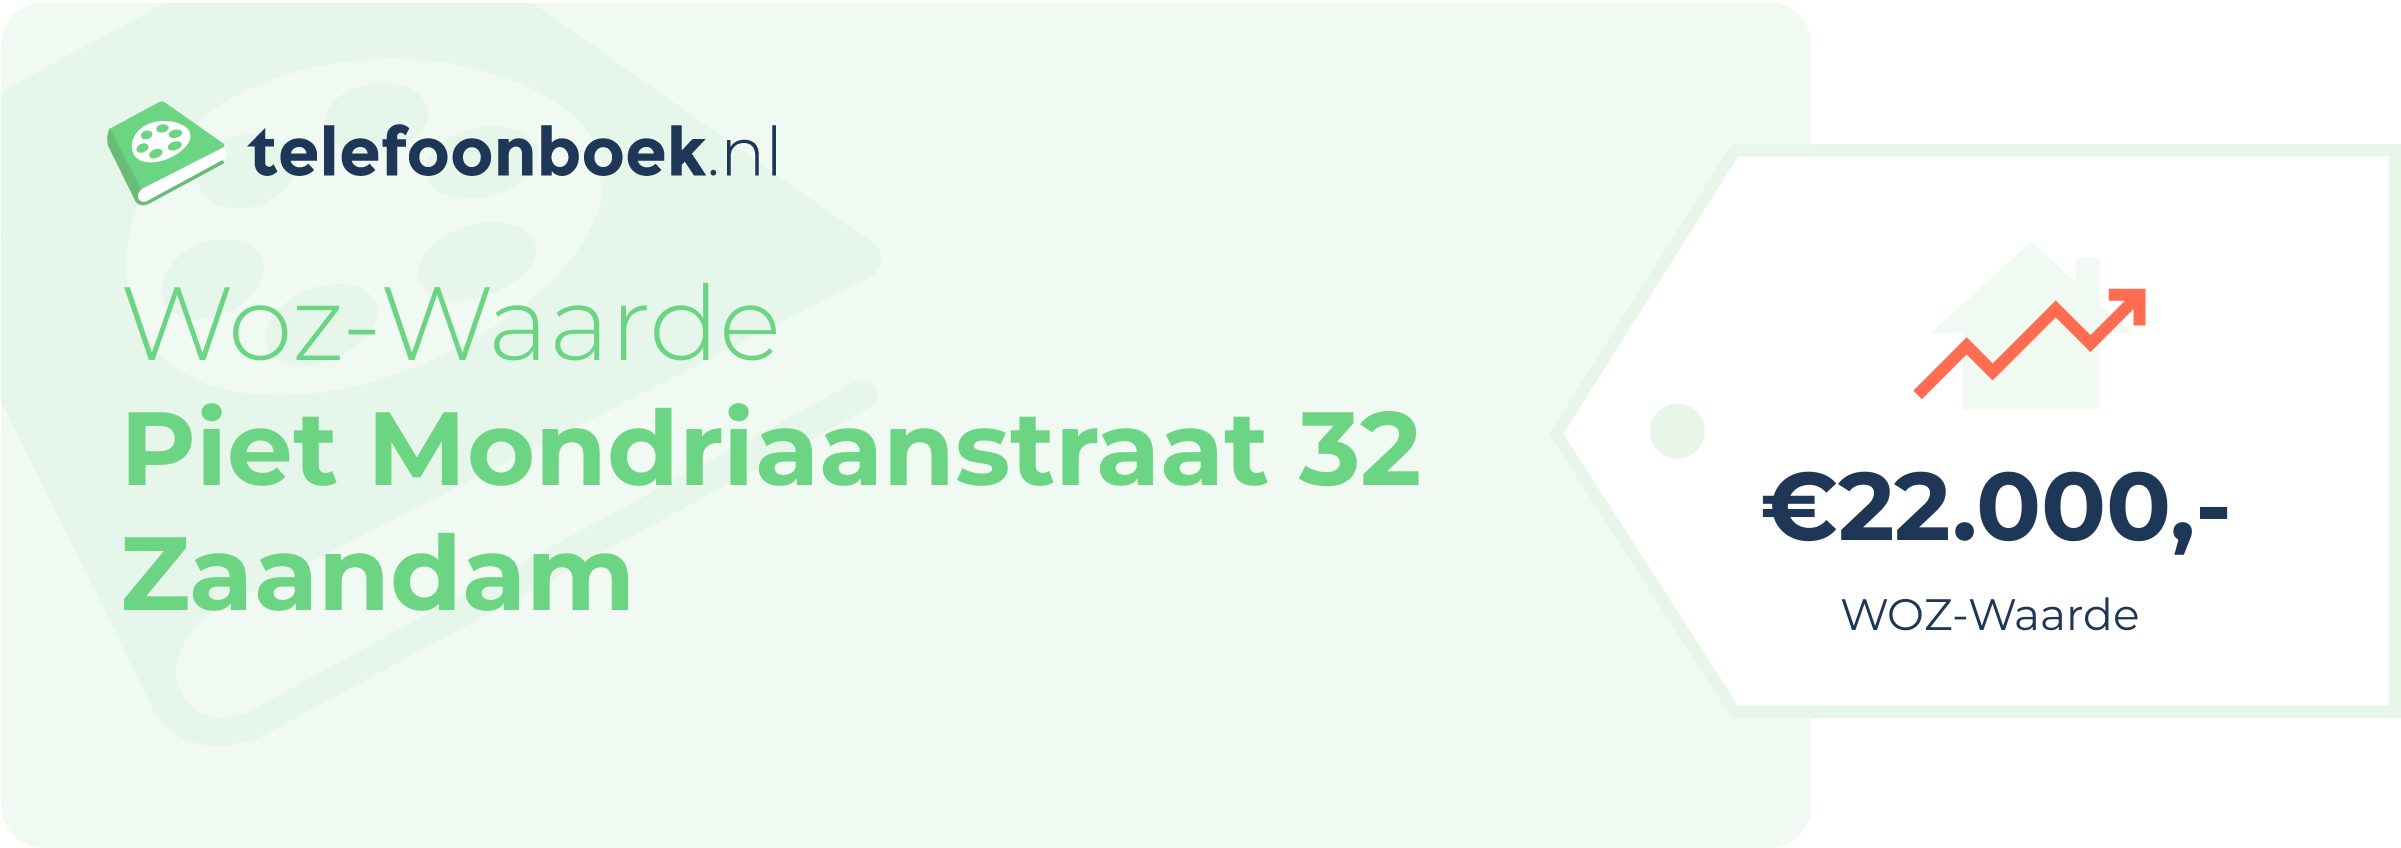 WOZ-waarde Piet Mondriaanstraat 32 Zaandam